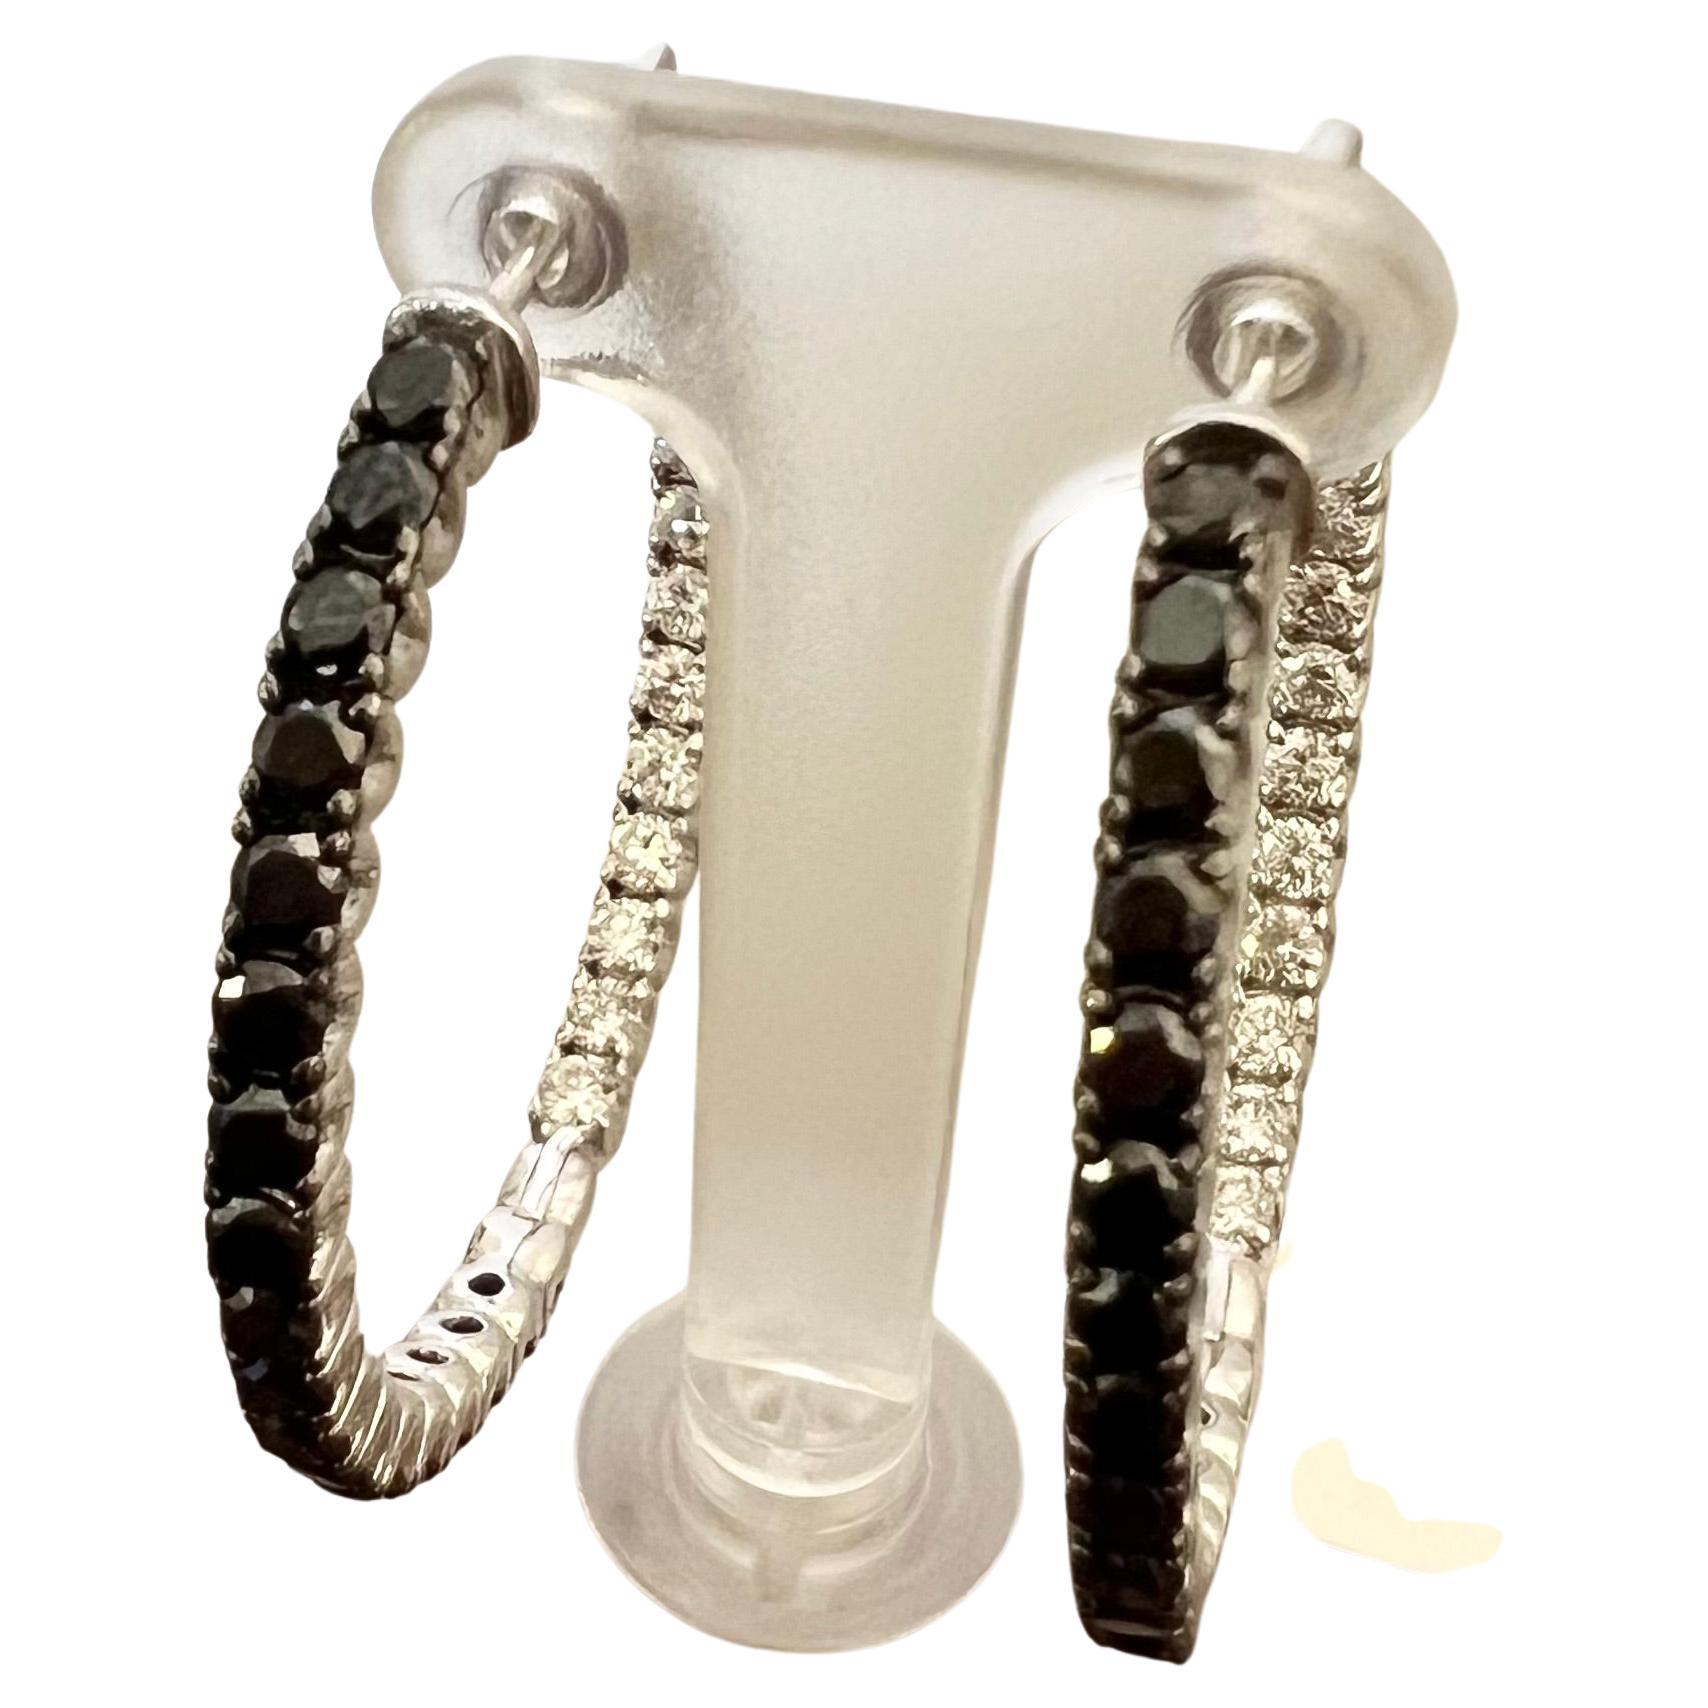 Diese wunderschönen Reif-Ohrringe bestehen aus 1,68 Karat schwarzen Diamanten im Rundschliff und 1,20 Karat weißen Diamanten im Rundschliff. Das Gesamtkaratgewicht der Ohrringe beträgt 2.88 Karat. 

Die Ohrringe messen ca. 1,5 cm und wiegen ca. 13,9